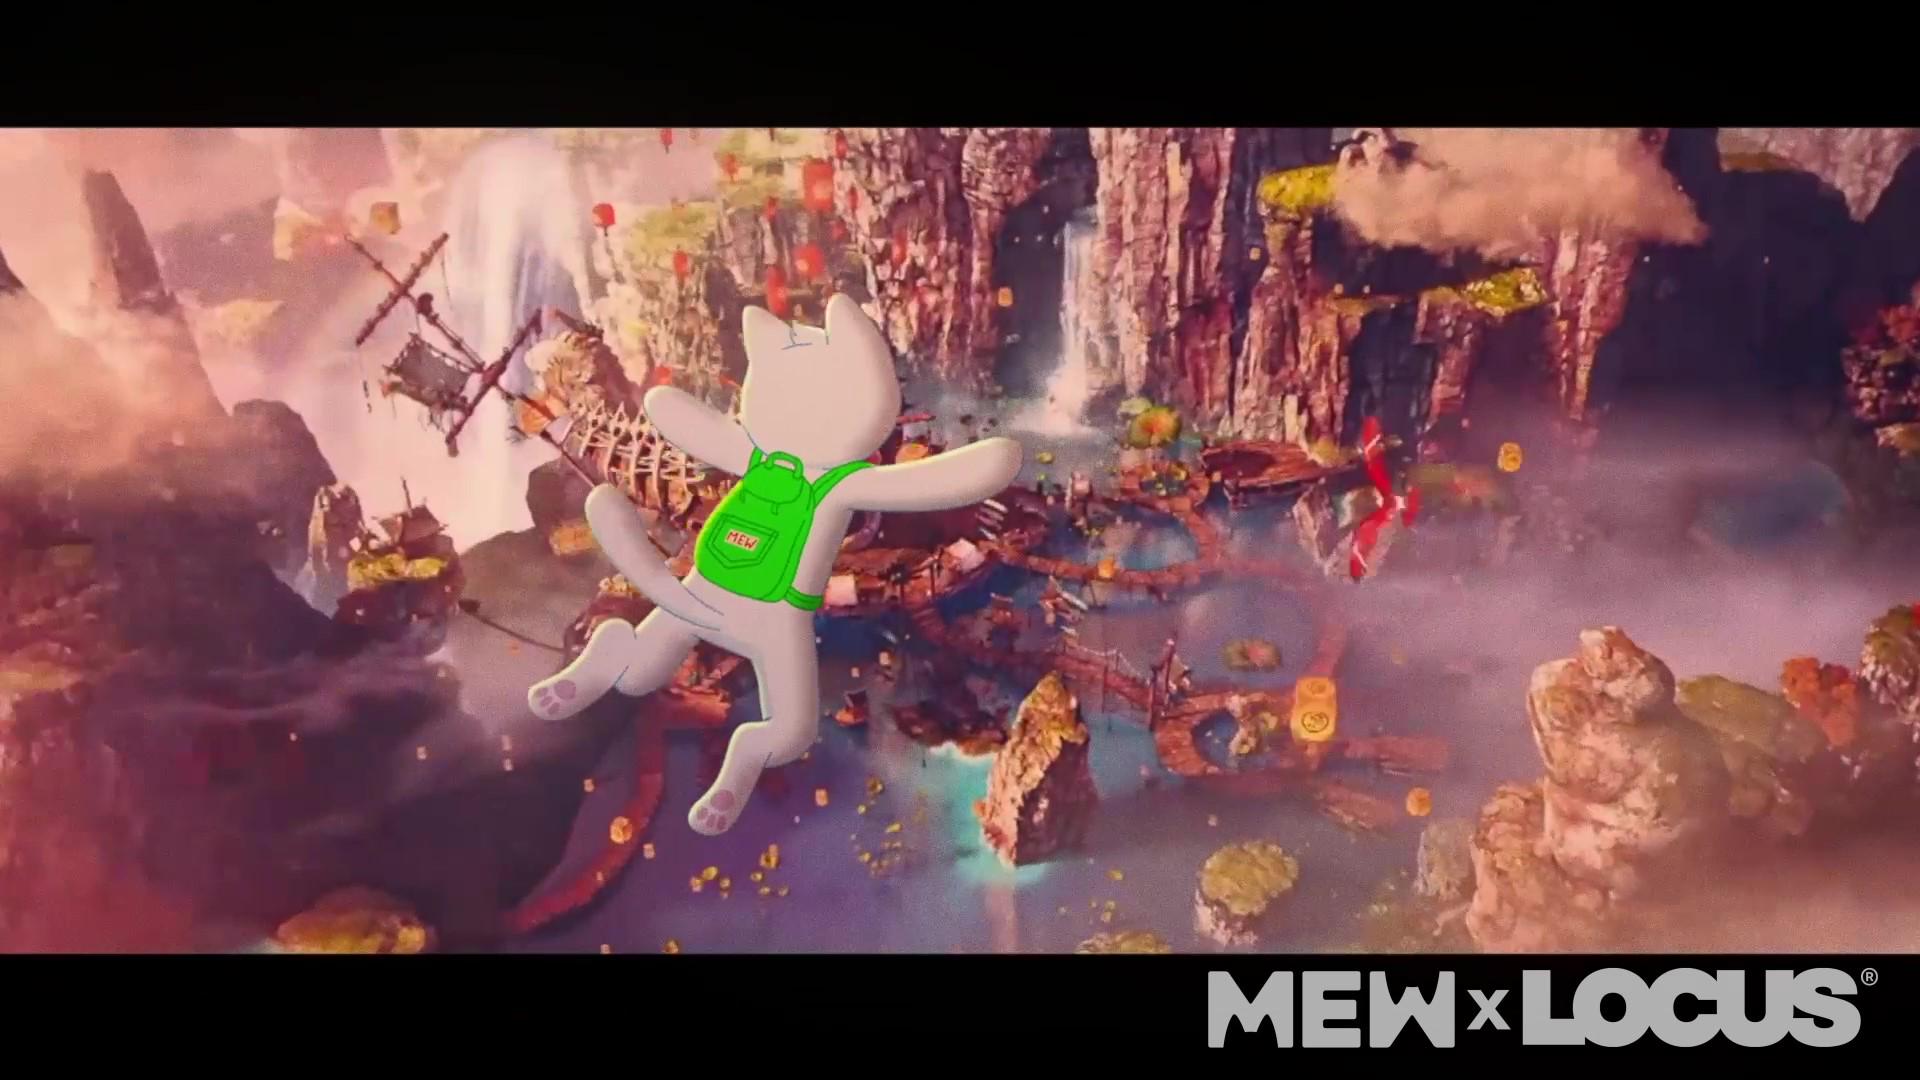 猫主题Meme币MEW与韩国LOCUS动画工作室宣布合作打造全新3D动画系列